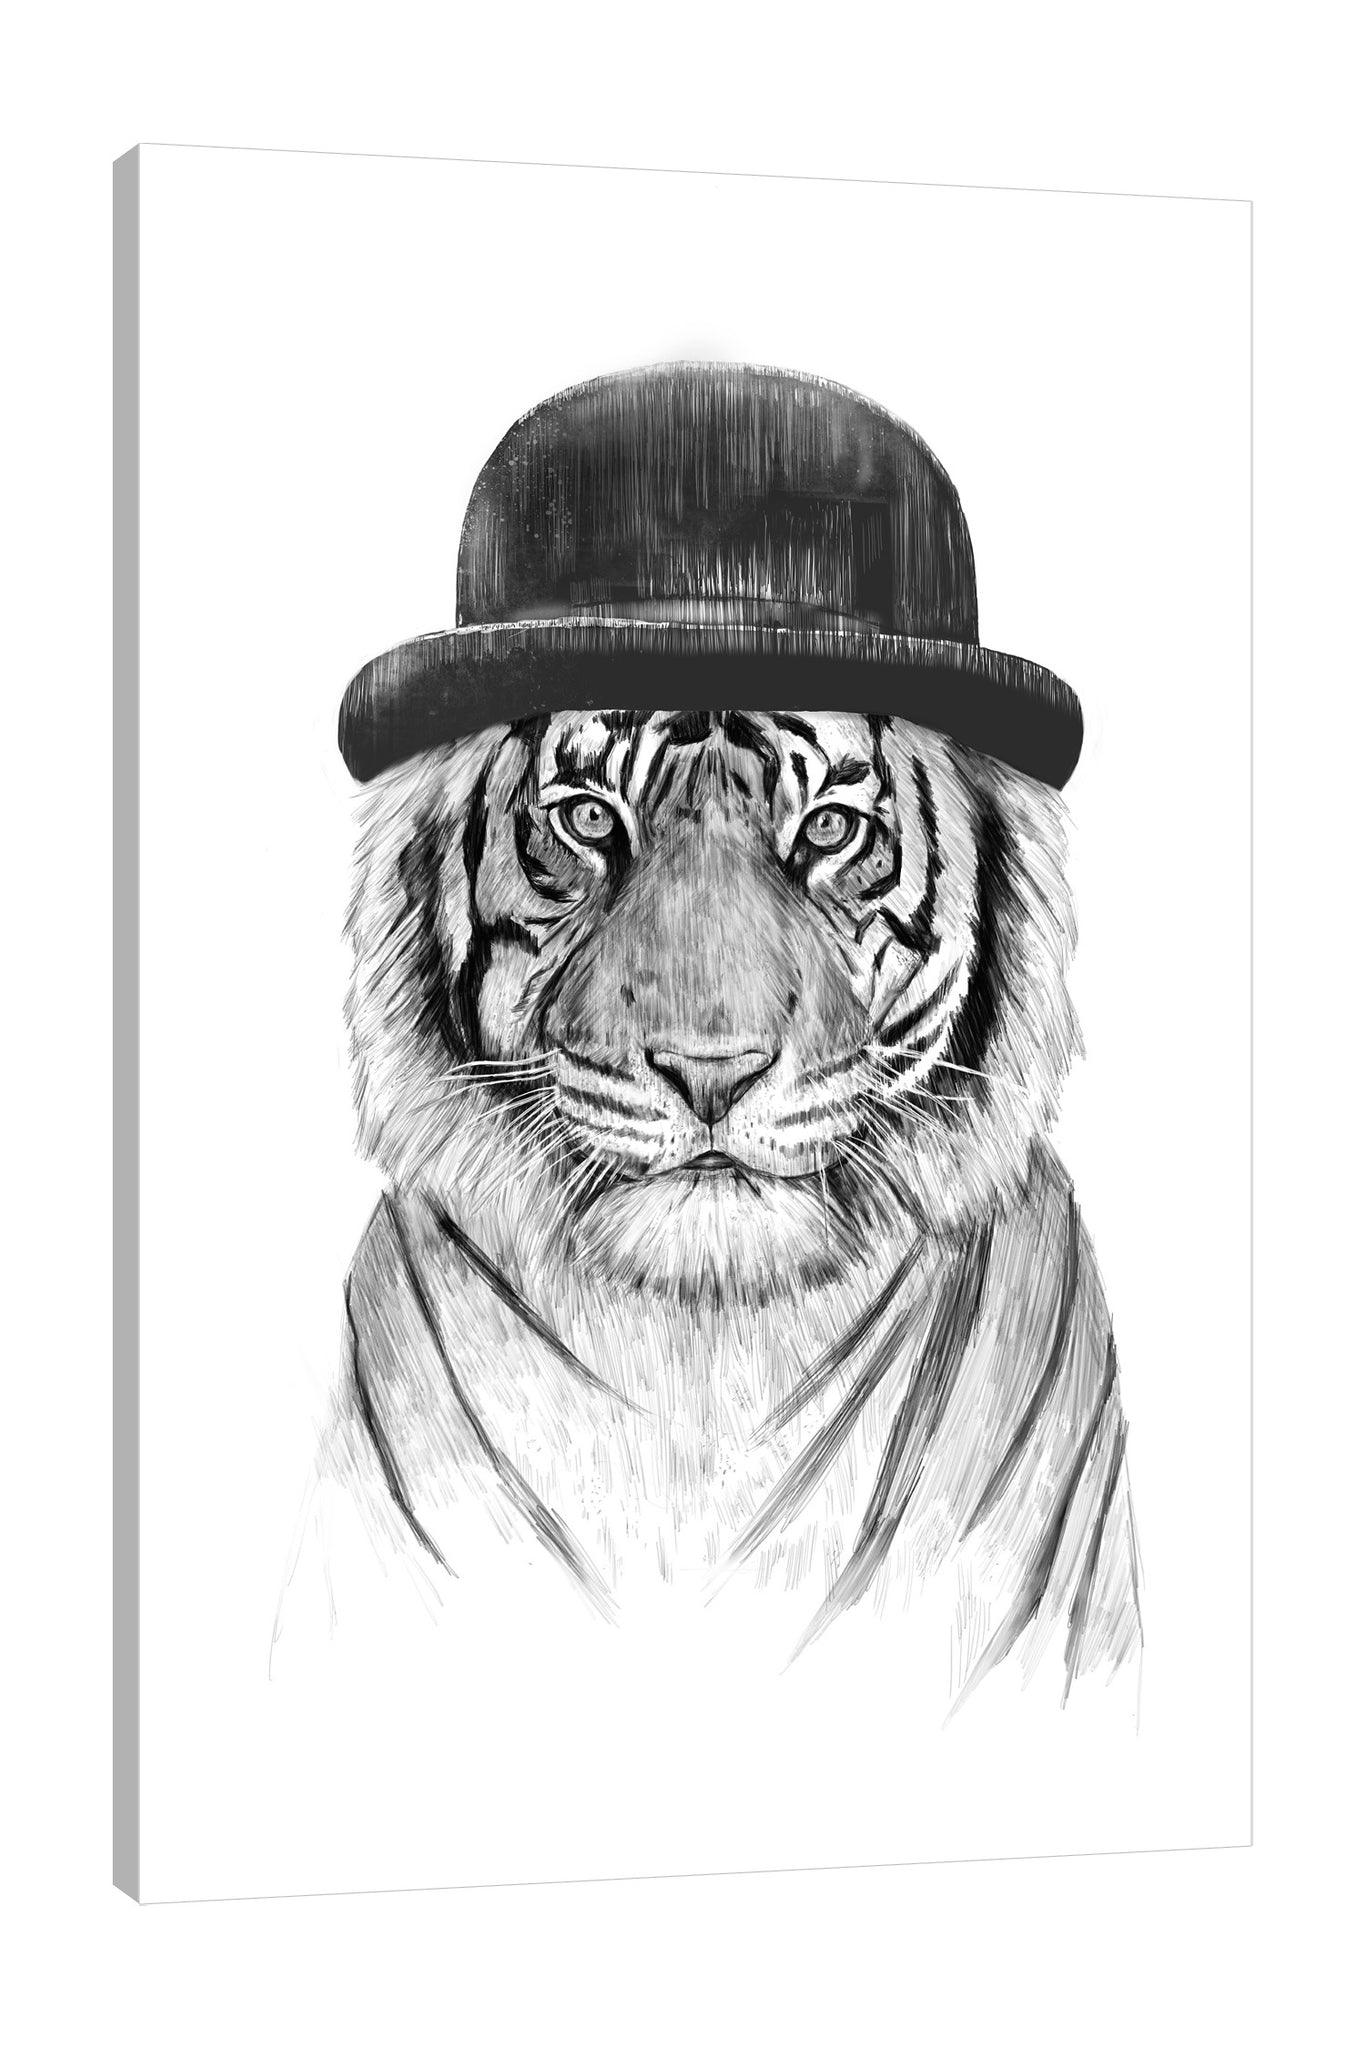 Balazs-Solti,Modern & Contemporary,Animals,animals,animal,tigers,tiger,hat,hats,pattern,patterns,welcome to the jungle,safari,big cats,big cat,Red,Mist Gray,Blue,Tan White